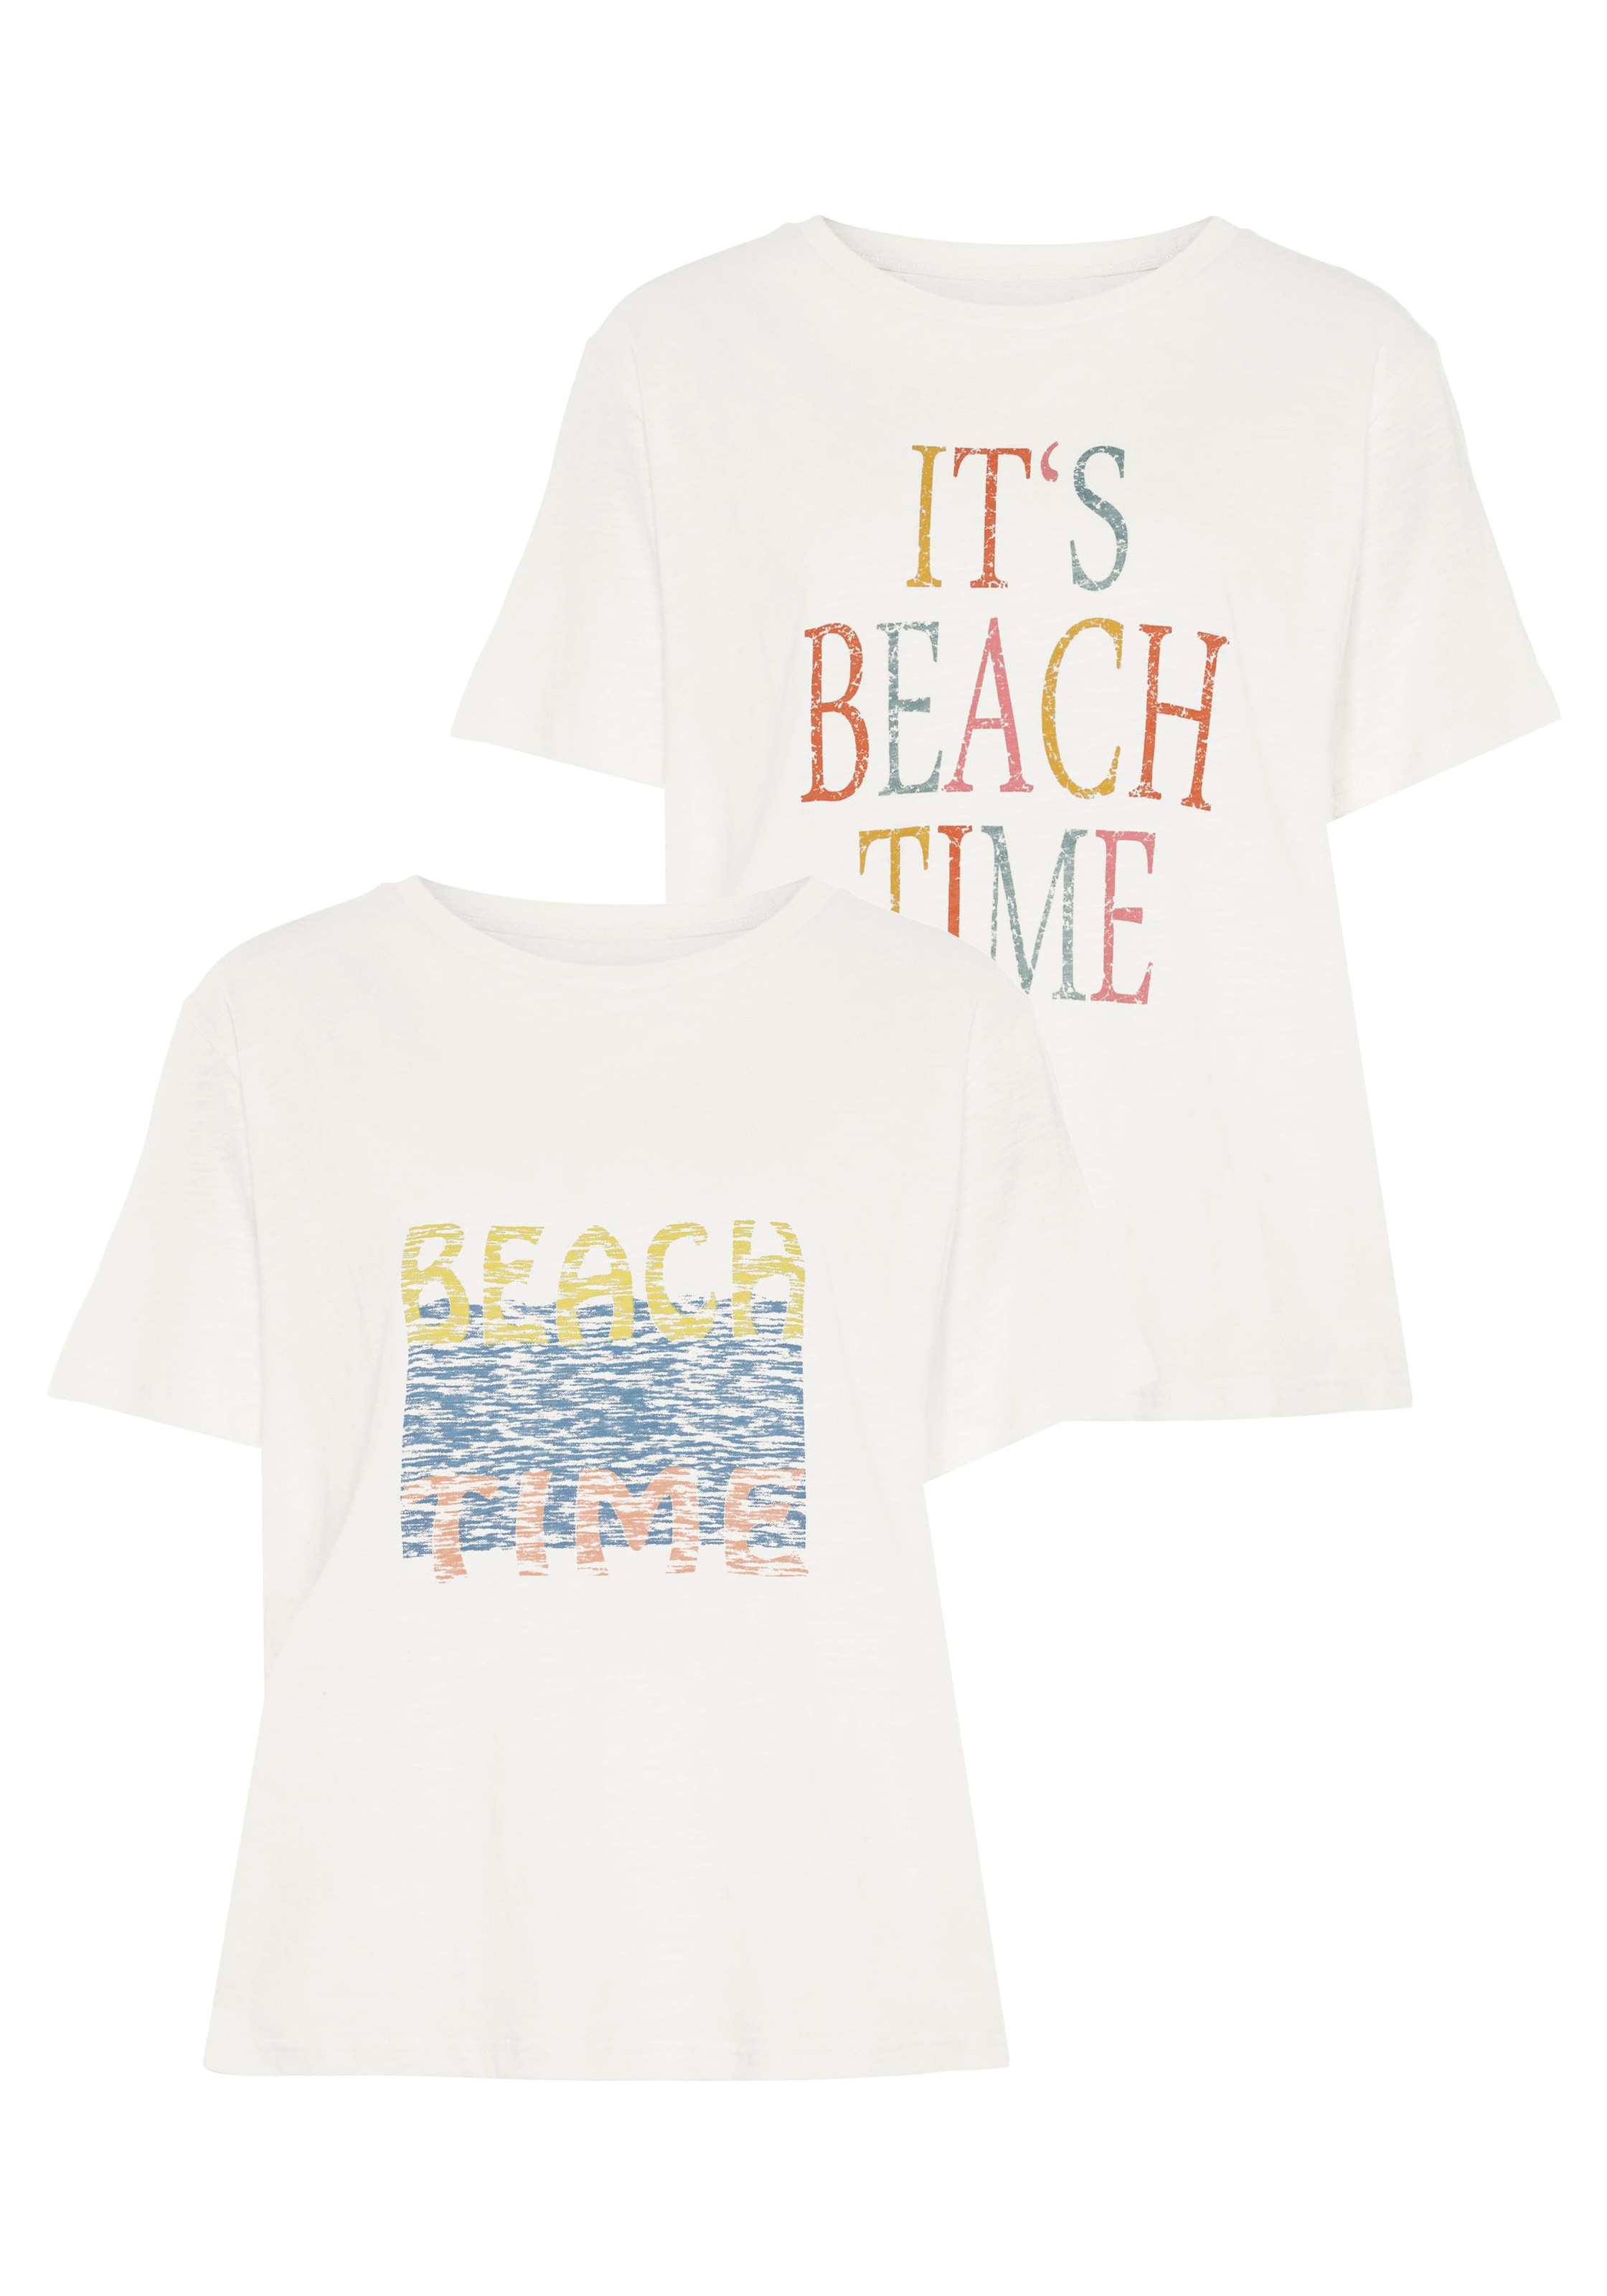 Beachtime Marškinėliai (Packung 2 tlg.) su du pa...